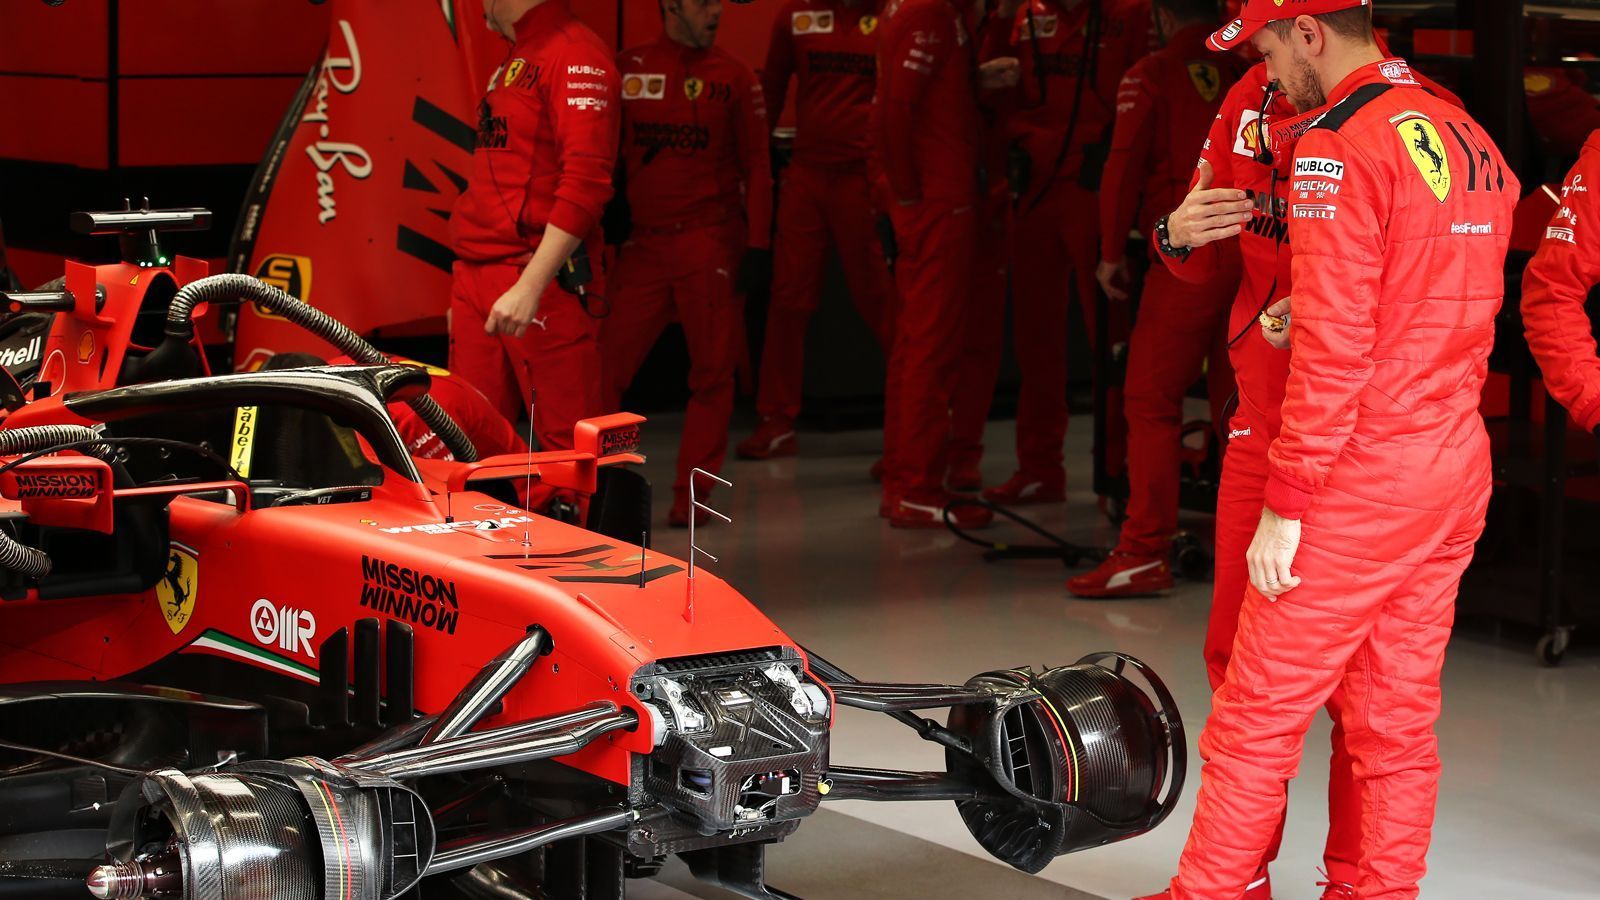 
                <strong>Ungewissheit für 2021: Vettel droht mit Abschied</strong><br>
                Wie lange wird sich Ferrari die ausgefahrenen Ellenbogen im Team anschauen? Legt Leclerc eine weitere überzeugende Saison hin, könnte Vettels Zeit bei der Scuderia nach der Saison 2020 abgelaufen sein. Dann nämlich läuft sein Vertrag bei Ferrari aus, während Leclerc noch bis 2024 in Rot fährt. Vettel selbst brachte nun in der "Sport Bild" selbst einen Wechsel ins Spiel. Auf die Frage, ob man nach Ferrari noch für ein anderes Team fahren könne, sagte der 32-Jährige: "Kann man schon, es gibt ja genug Beispiele, die das belegen, auch als Deutscher. Der Michael (Schumacher, Anm. d. Red.) ist ja danach noch woanders gefahren, wenn ich mich richtig erinnere." So sorgte Vettel schon für Personaldebatten um das Ferrari-Cockpit neben Leclerc, bevor die Silly Season wirklich begonnen hat.
              